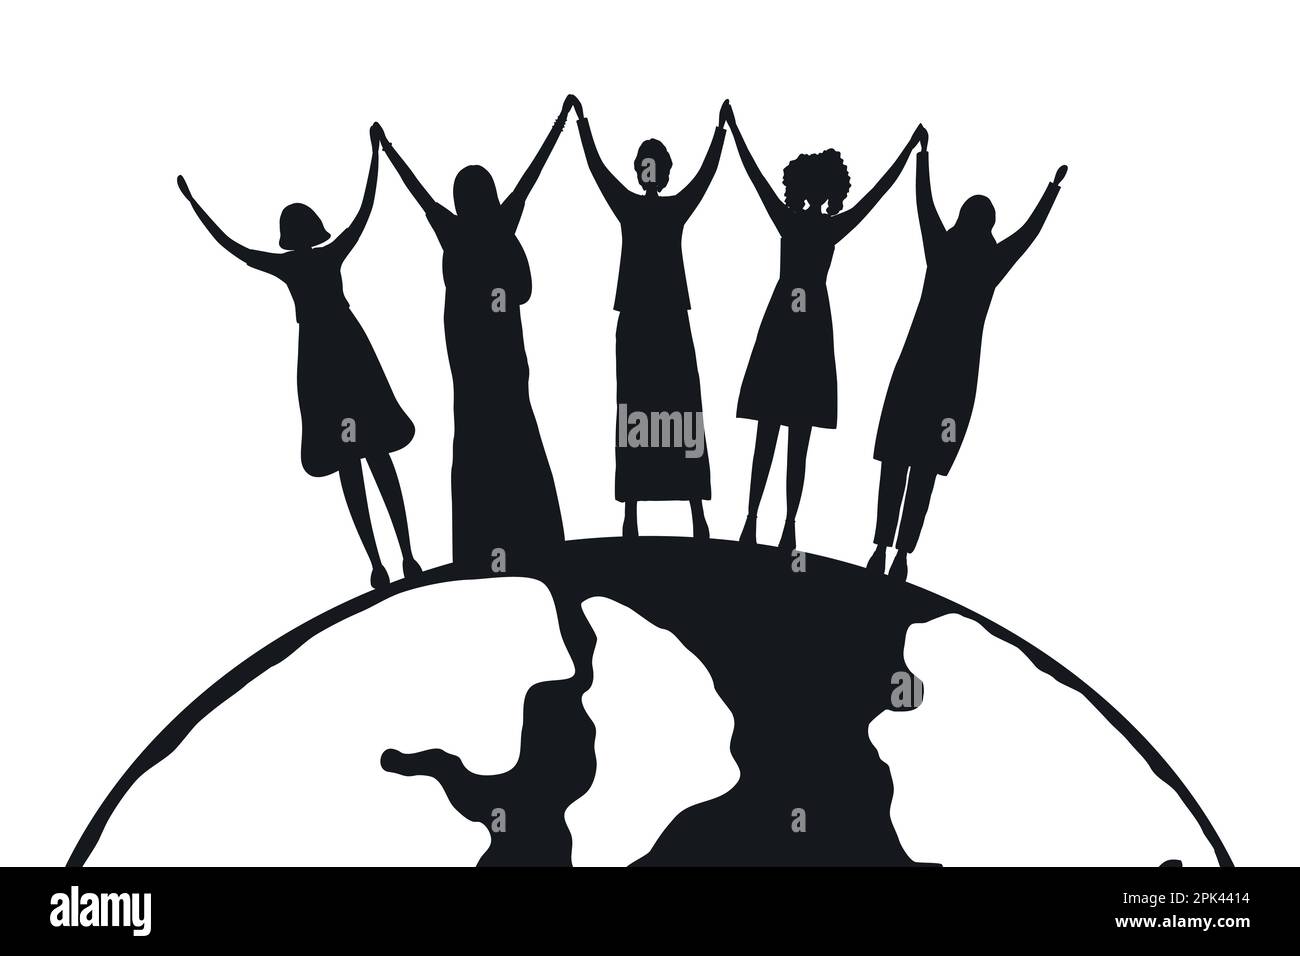 Schwarze Silhouetten von Frauen. Konzept zum Internationalen Frauentag. Frauen, die Händchen halten, stehen auf dem Globus-Hintergrund. Frauengemeinde. Weibliche Solidarität Stock Vektor